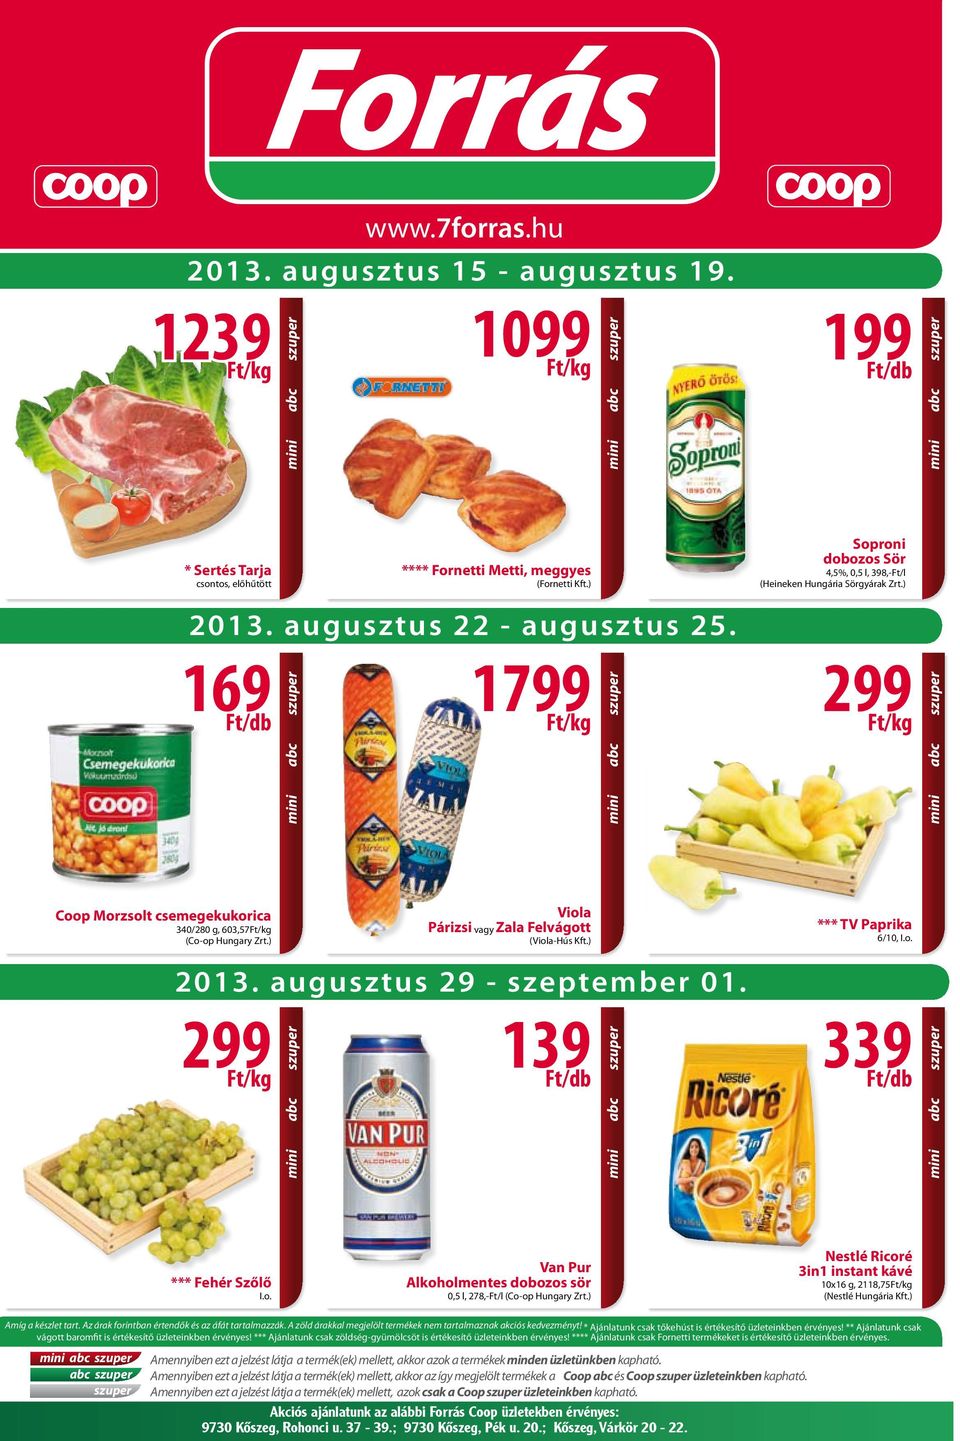 ) Soproni dobozos Sör 4,5%, 0,5 l, 398,-Ft/l (Heineken Hungária Sörgyárak Zrt.) 2013. augusztus 22 - augusztus 25.